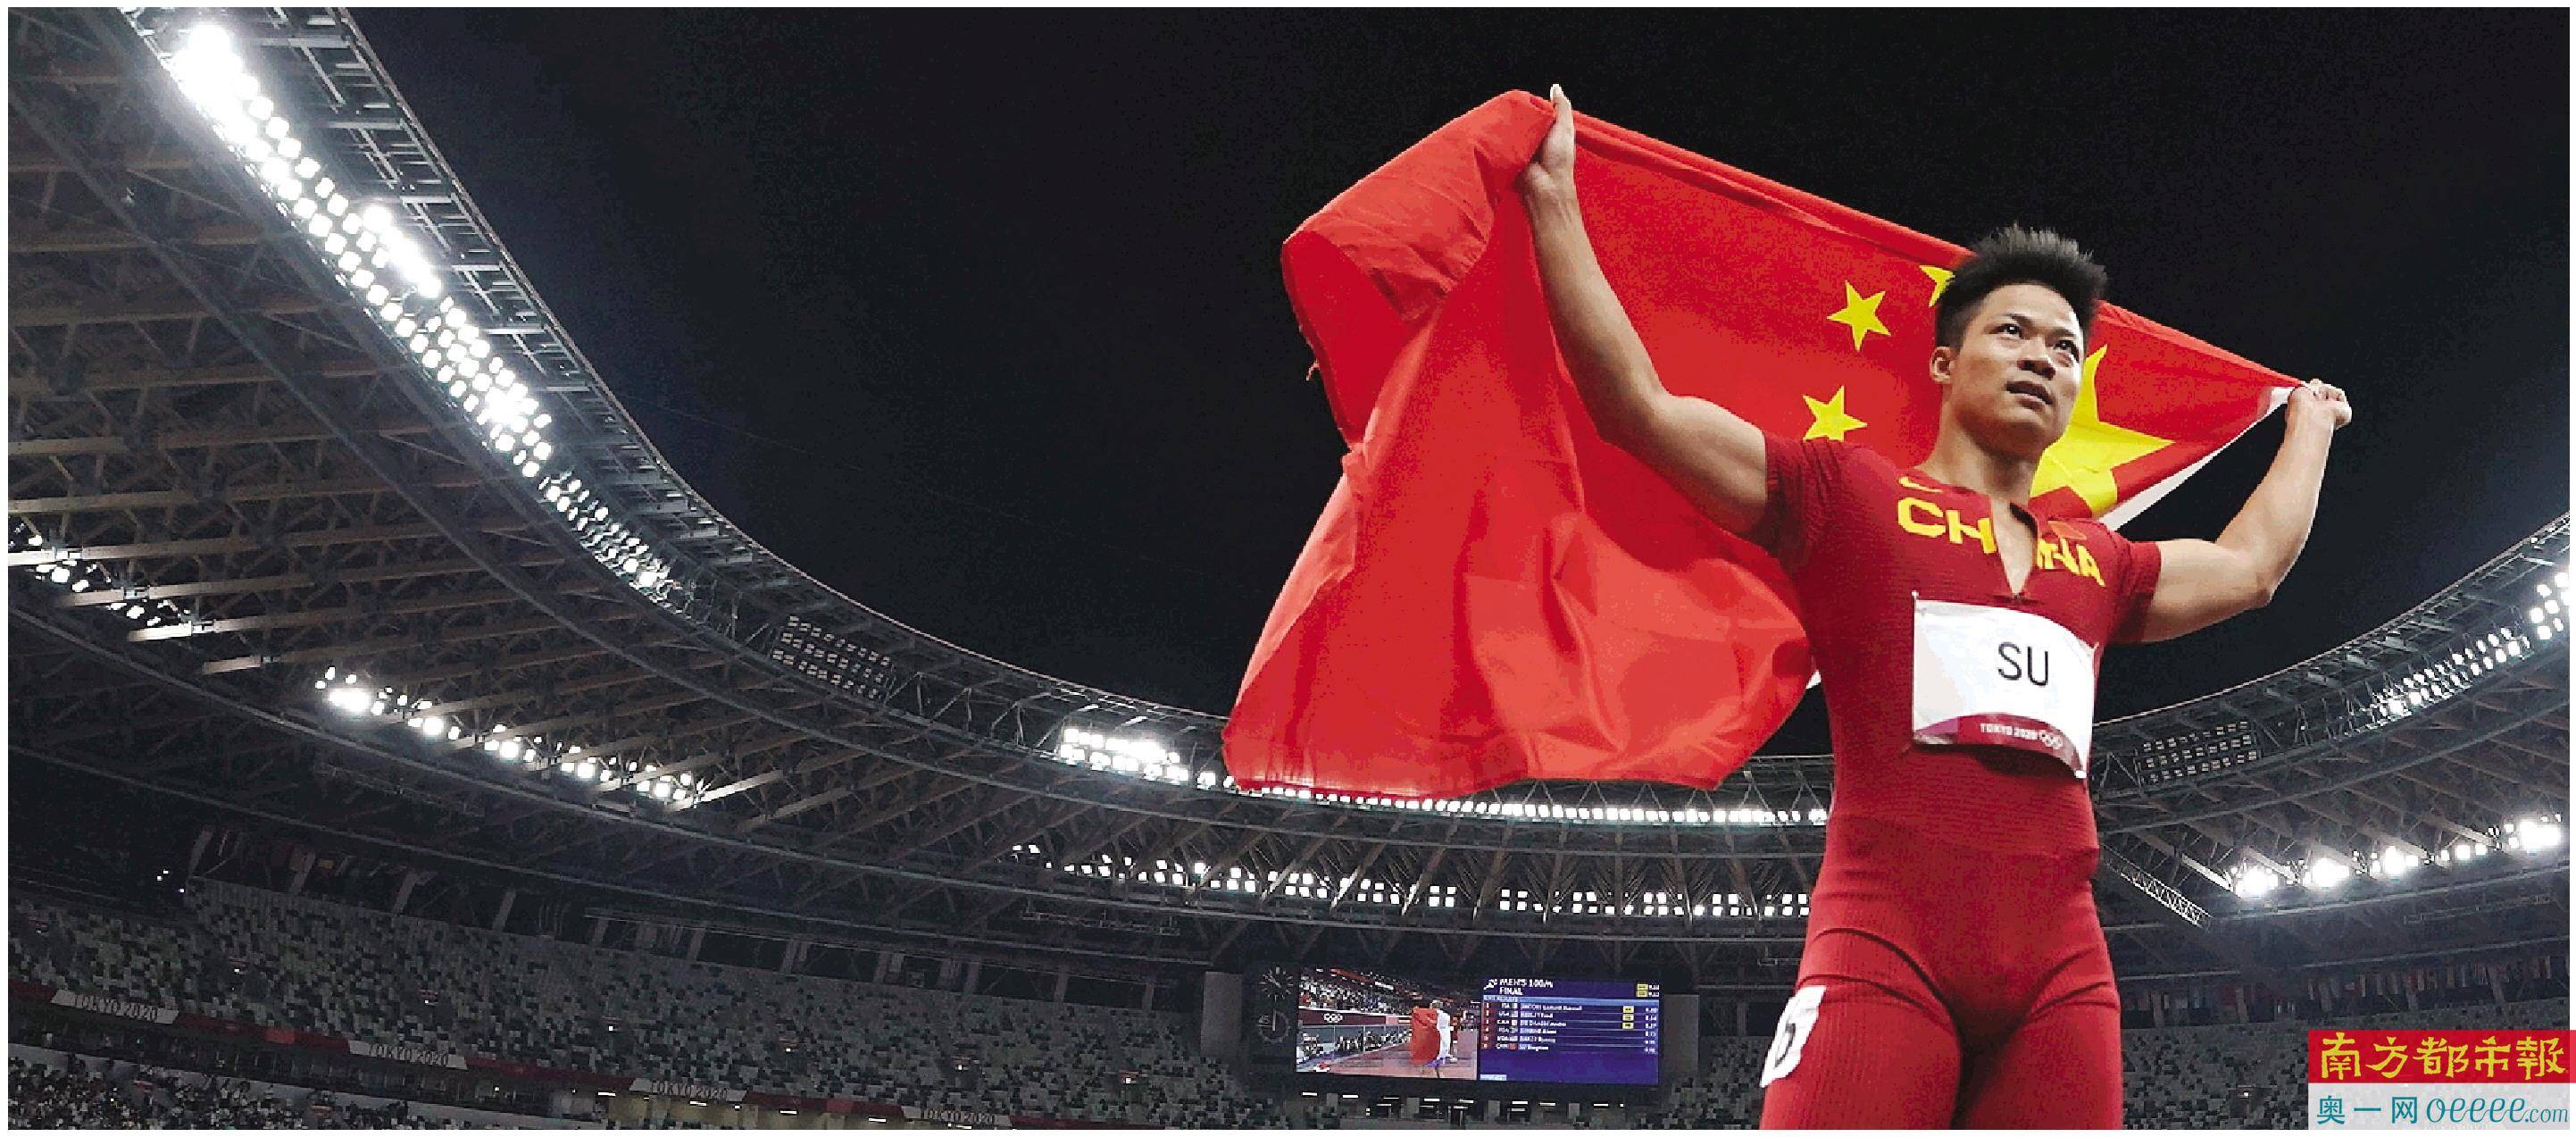 中国队选手苏炳添出战东京奥运会田径男子100米决赛,比赛后手举国旗